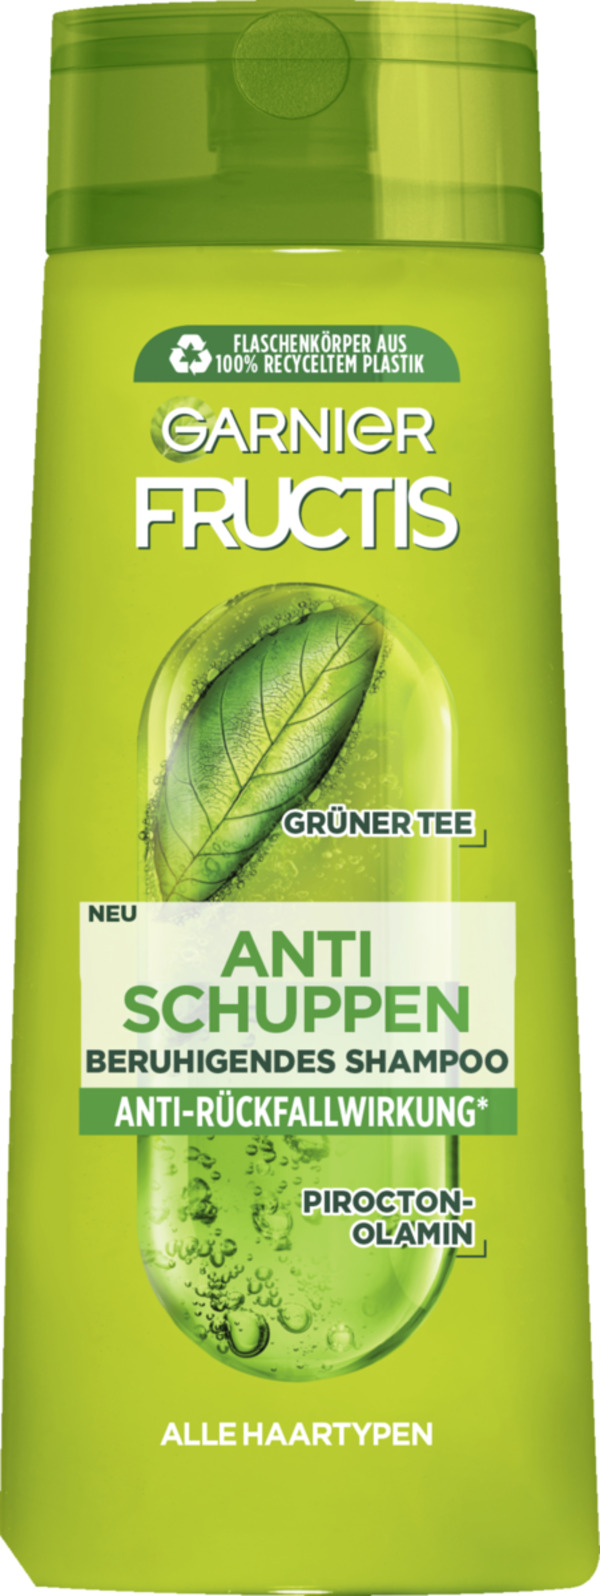 Bild 1 von Garnier Fructis Anti-Schuppen kräftigendes Shampoo 0.94 EUR/100 ml